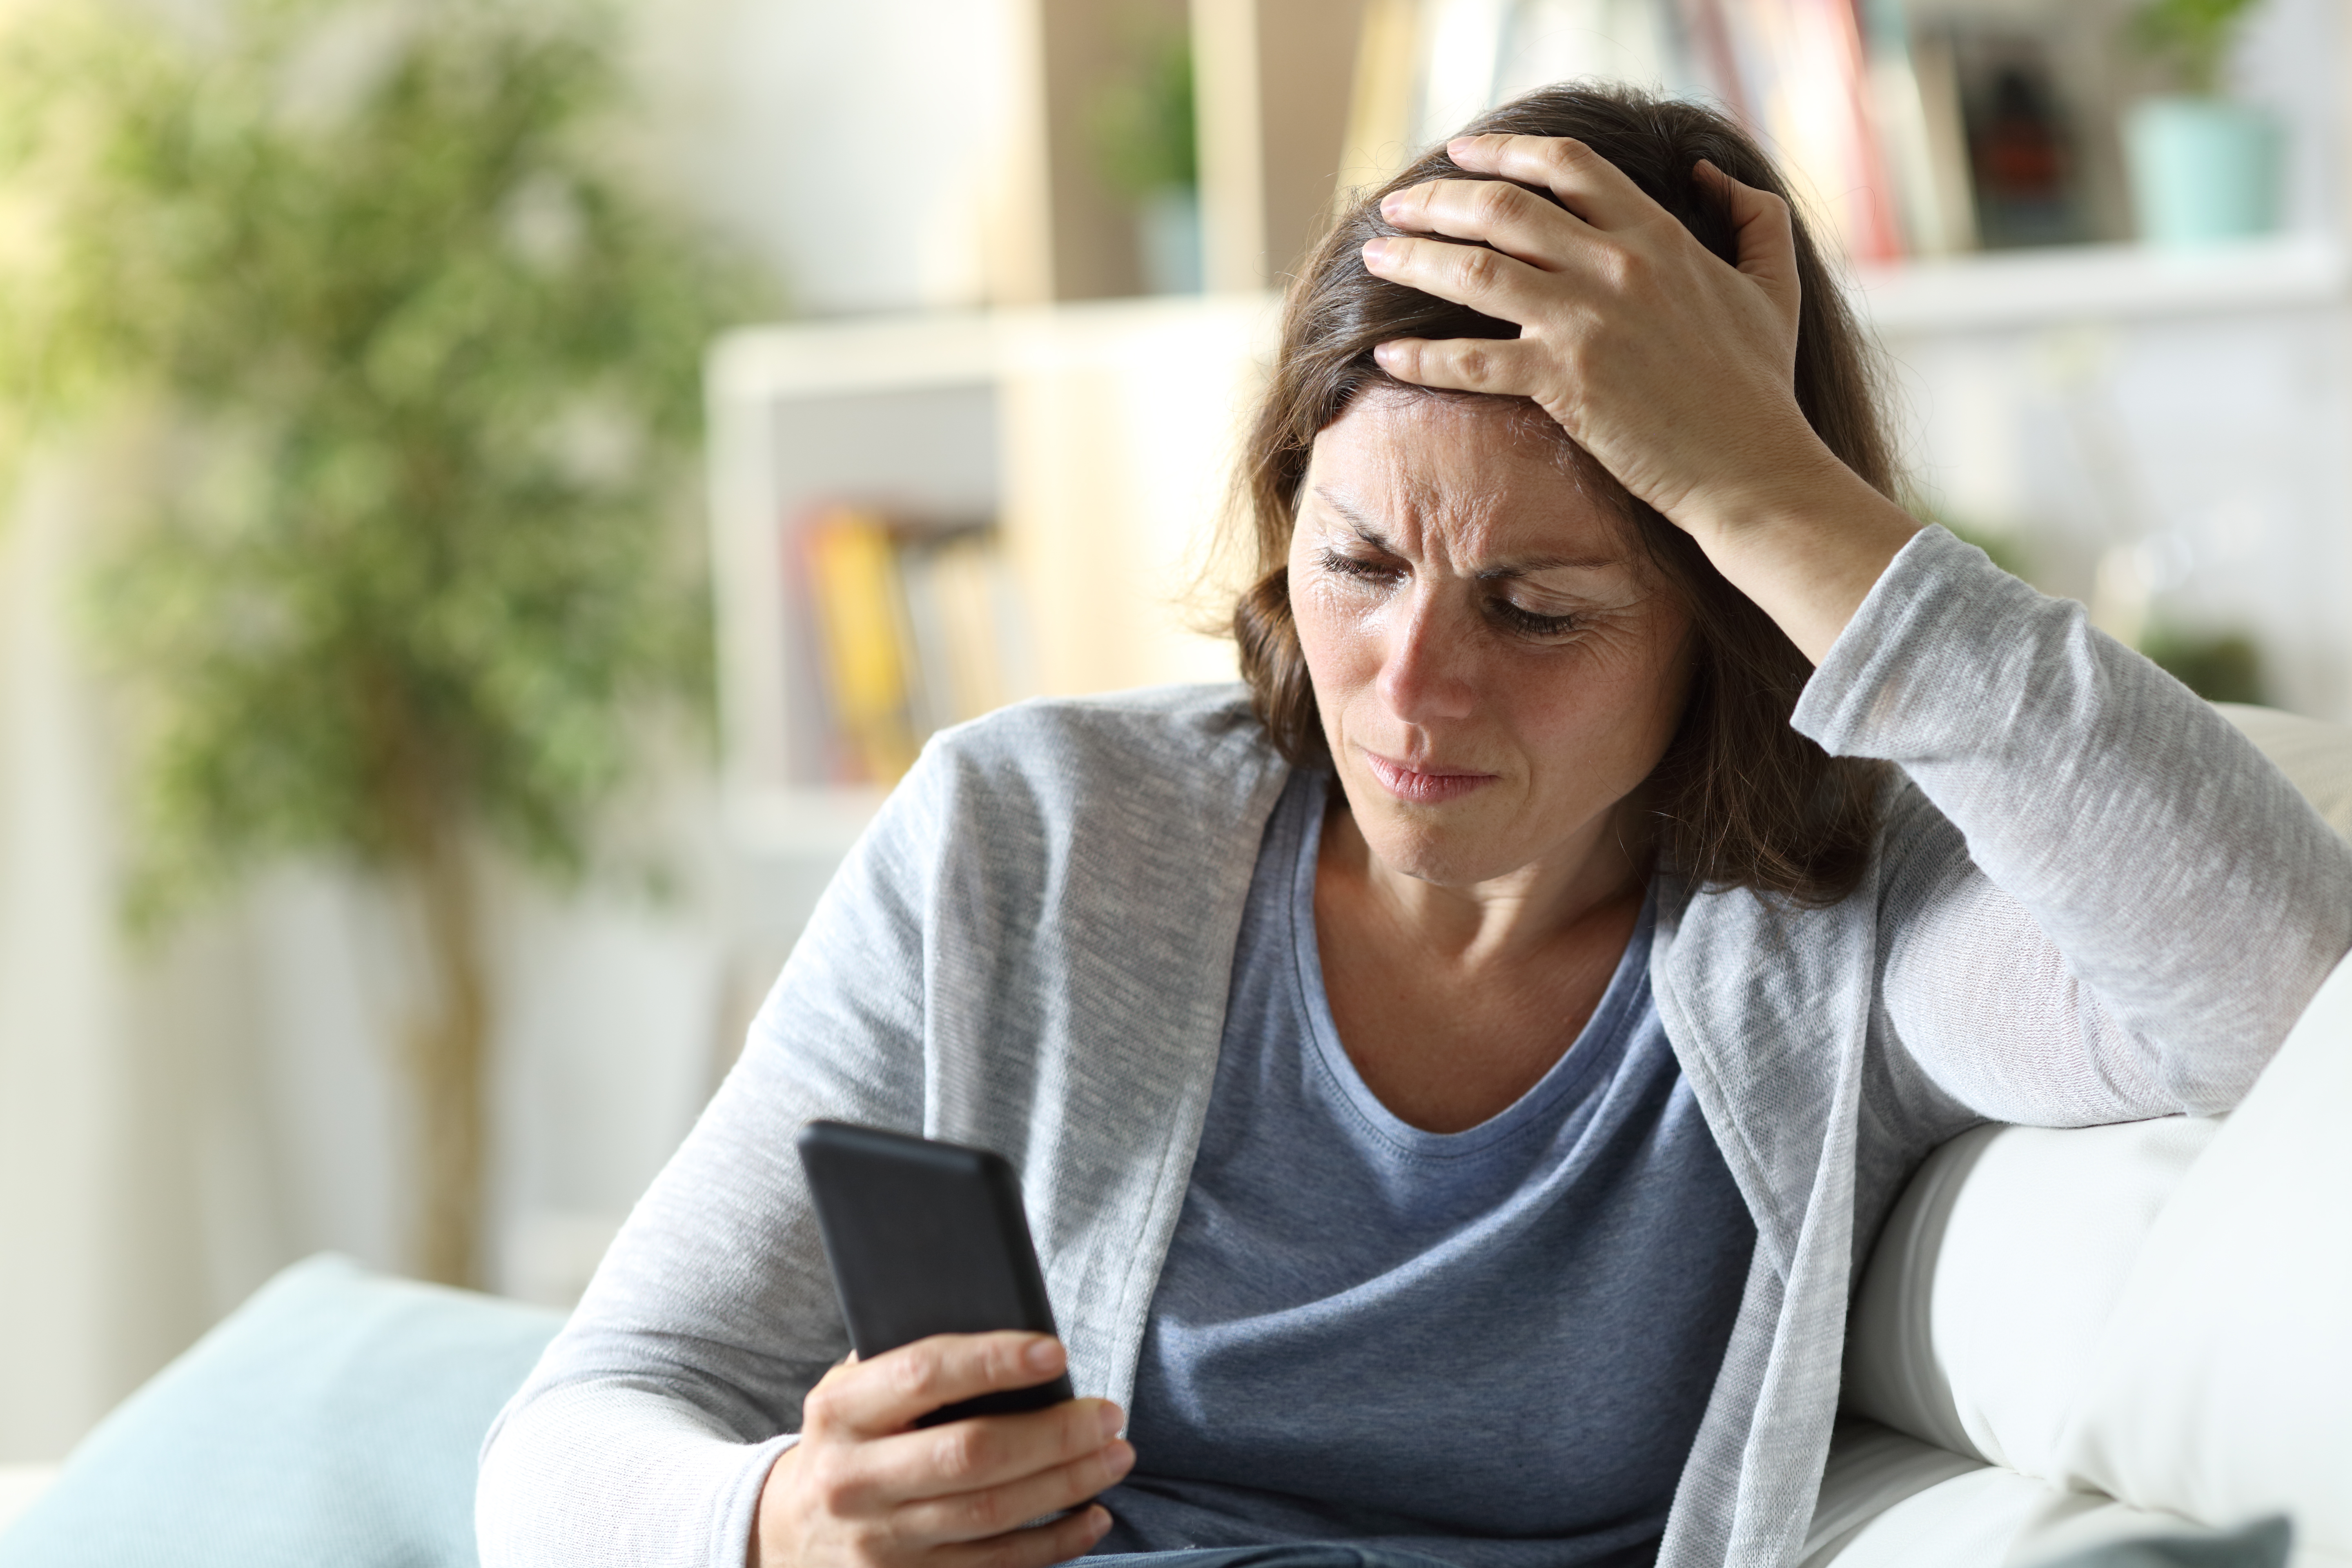 Une femme à l'air confus et triste en regardant son téléphone | Source : Shutterstock